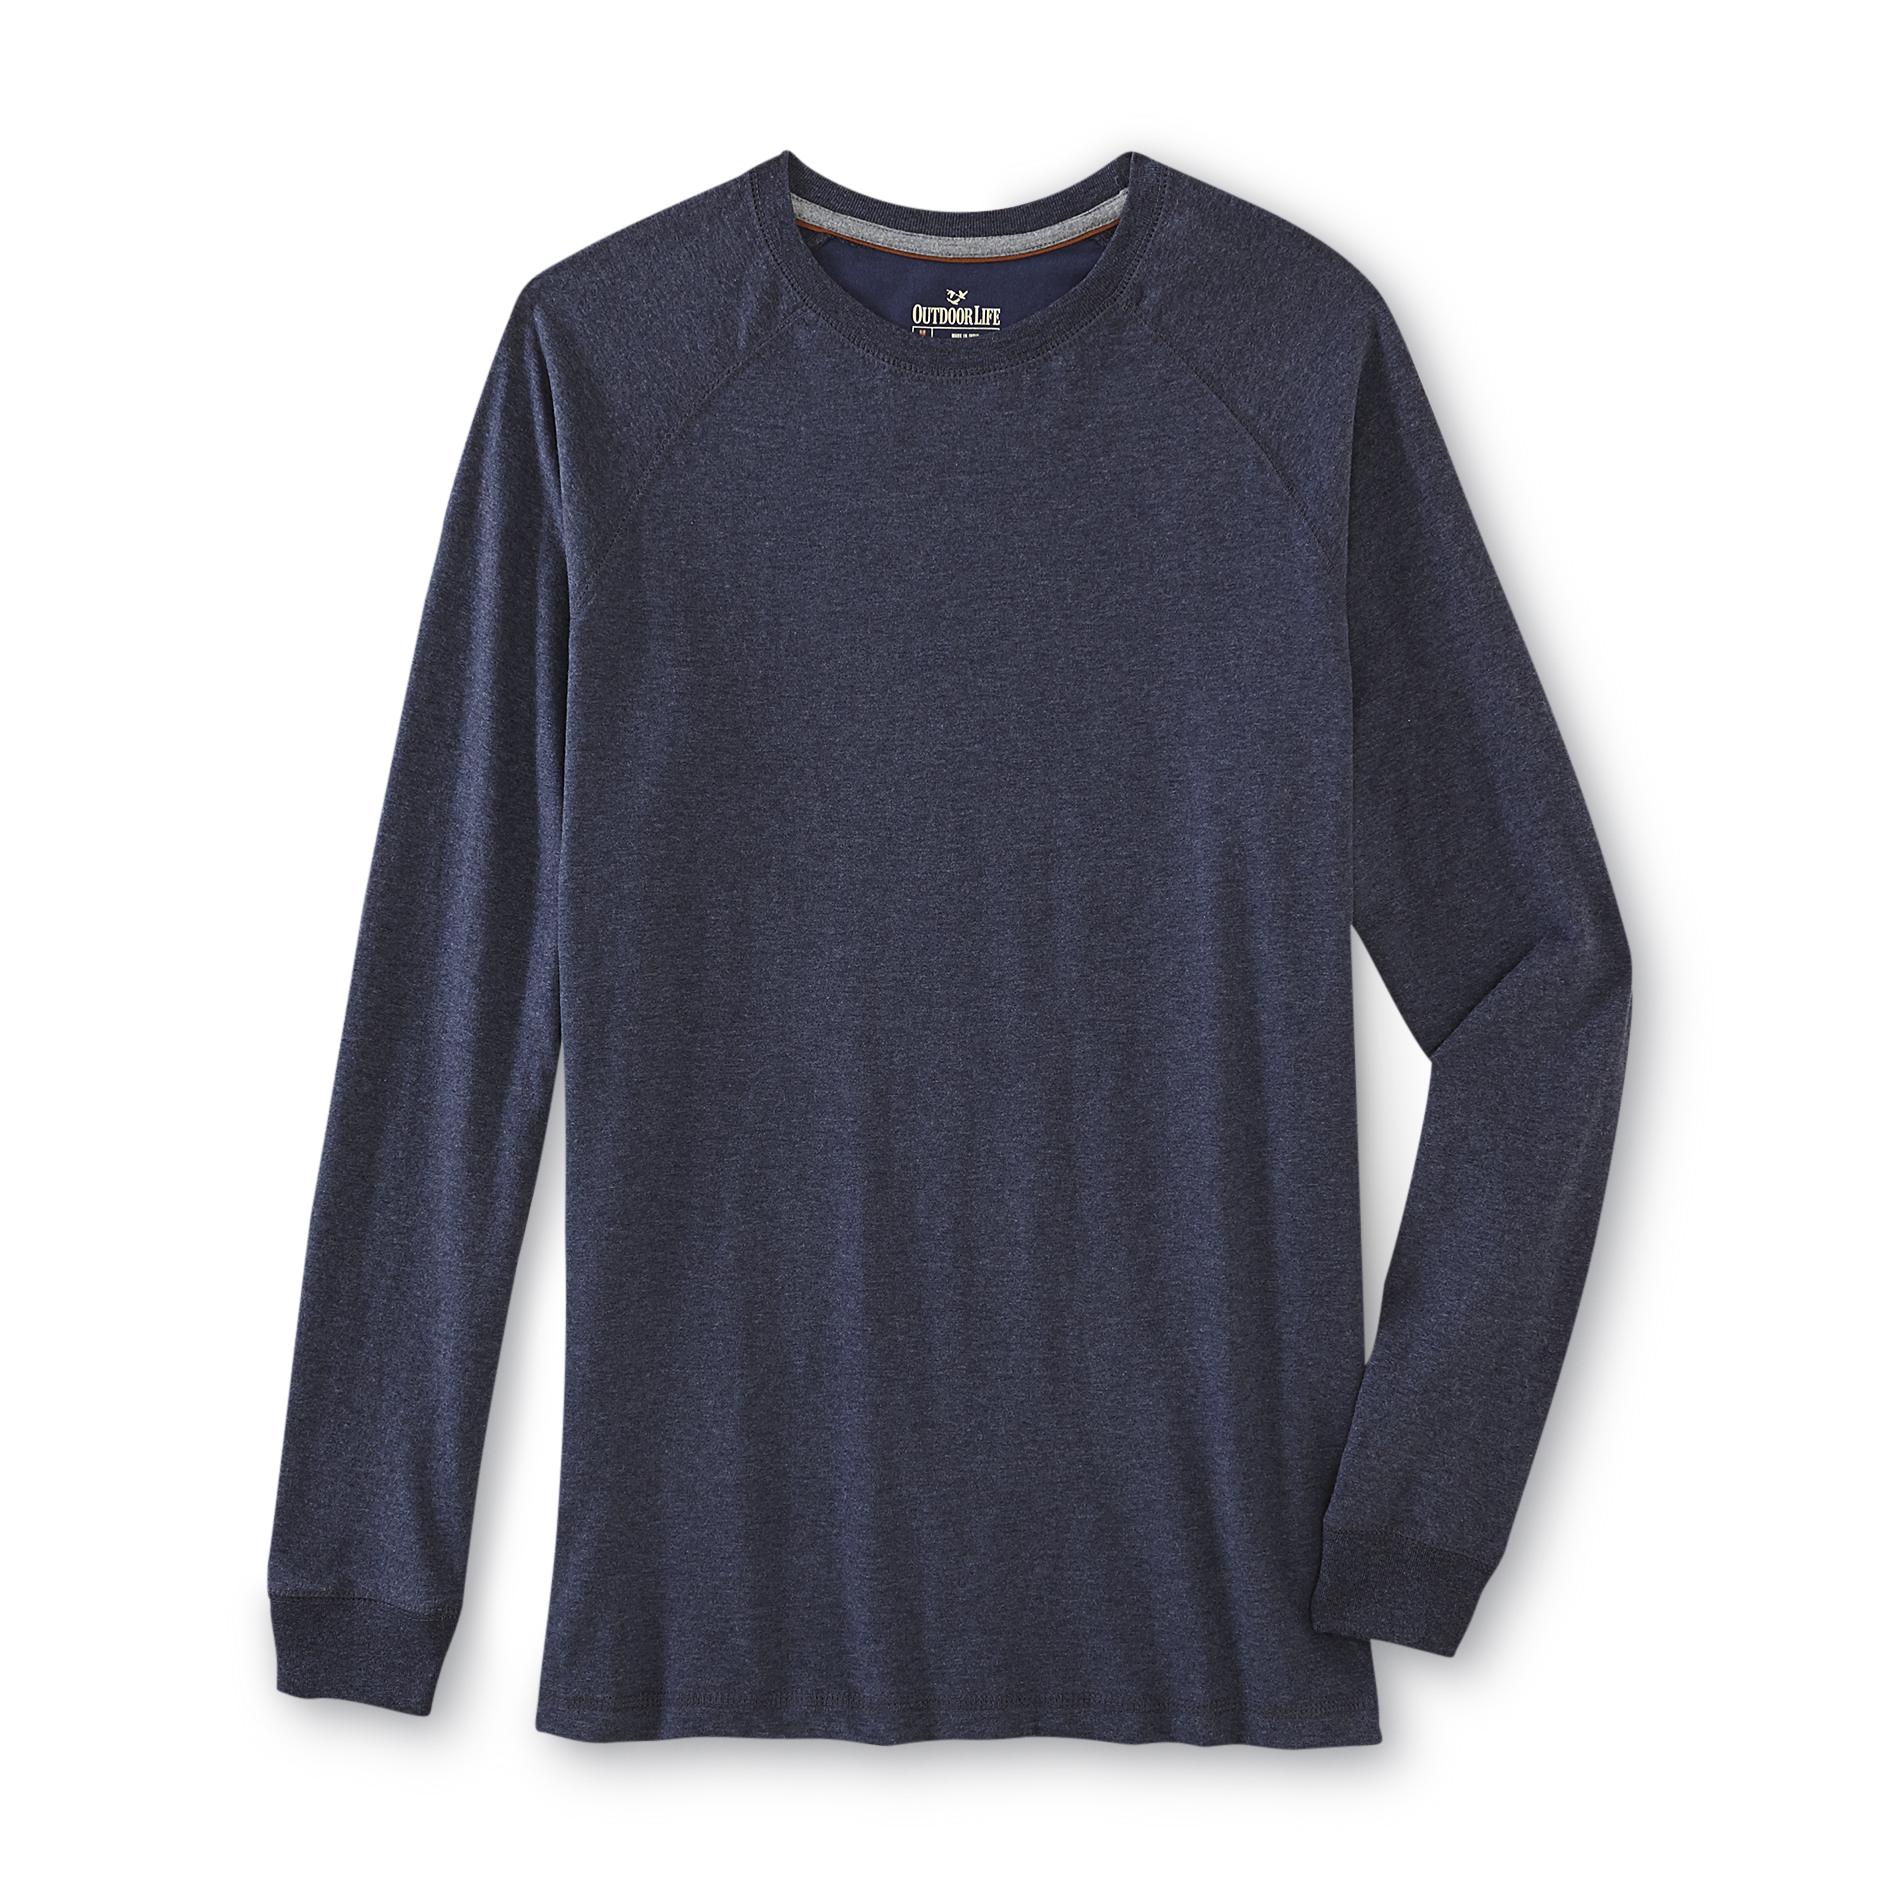 Outdoor Life Men's Long-Sleeve Raglan T-Shirt | Shop Your Way: Online ...